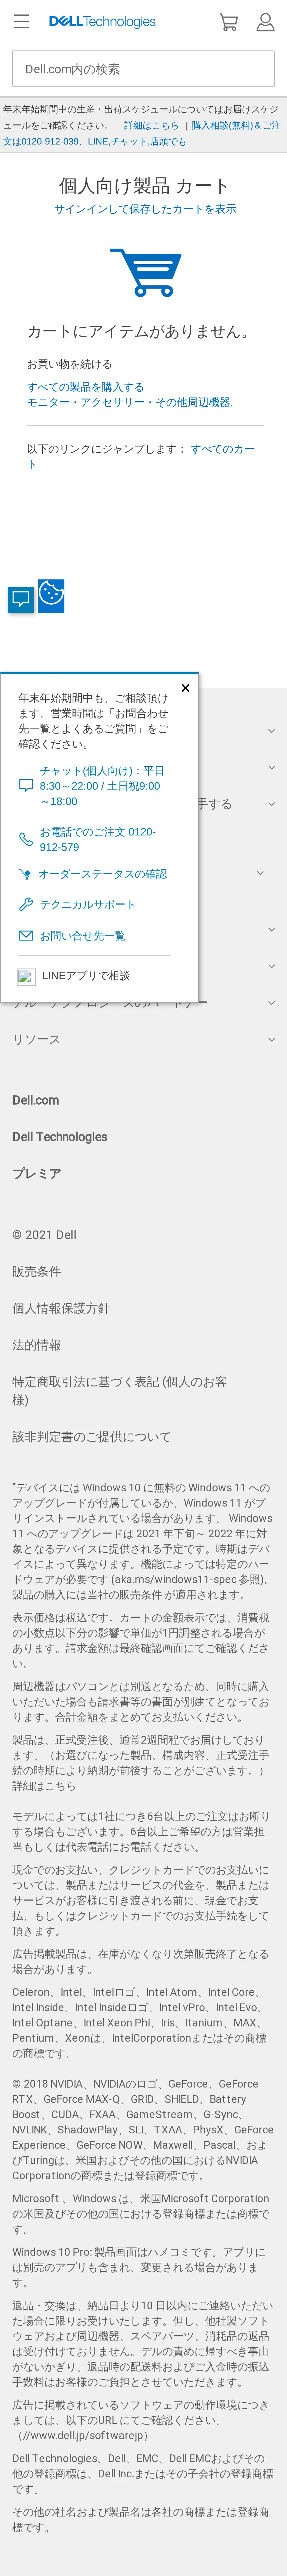 キャプチャ画面 会社名:デル株式会社プロジェクト名:DELL JAPAN(個人向け) 画面名:カート確認 デバイス名:SPカテゴリ:EC・オンラインショップタグ:カート確認,SP